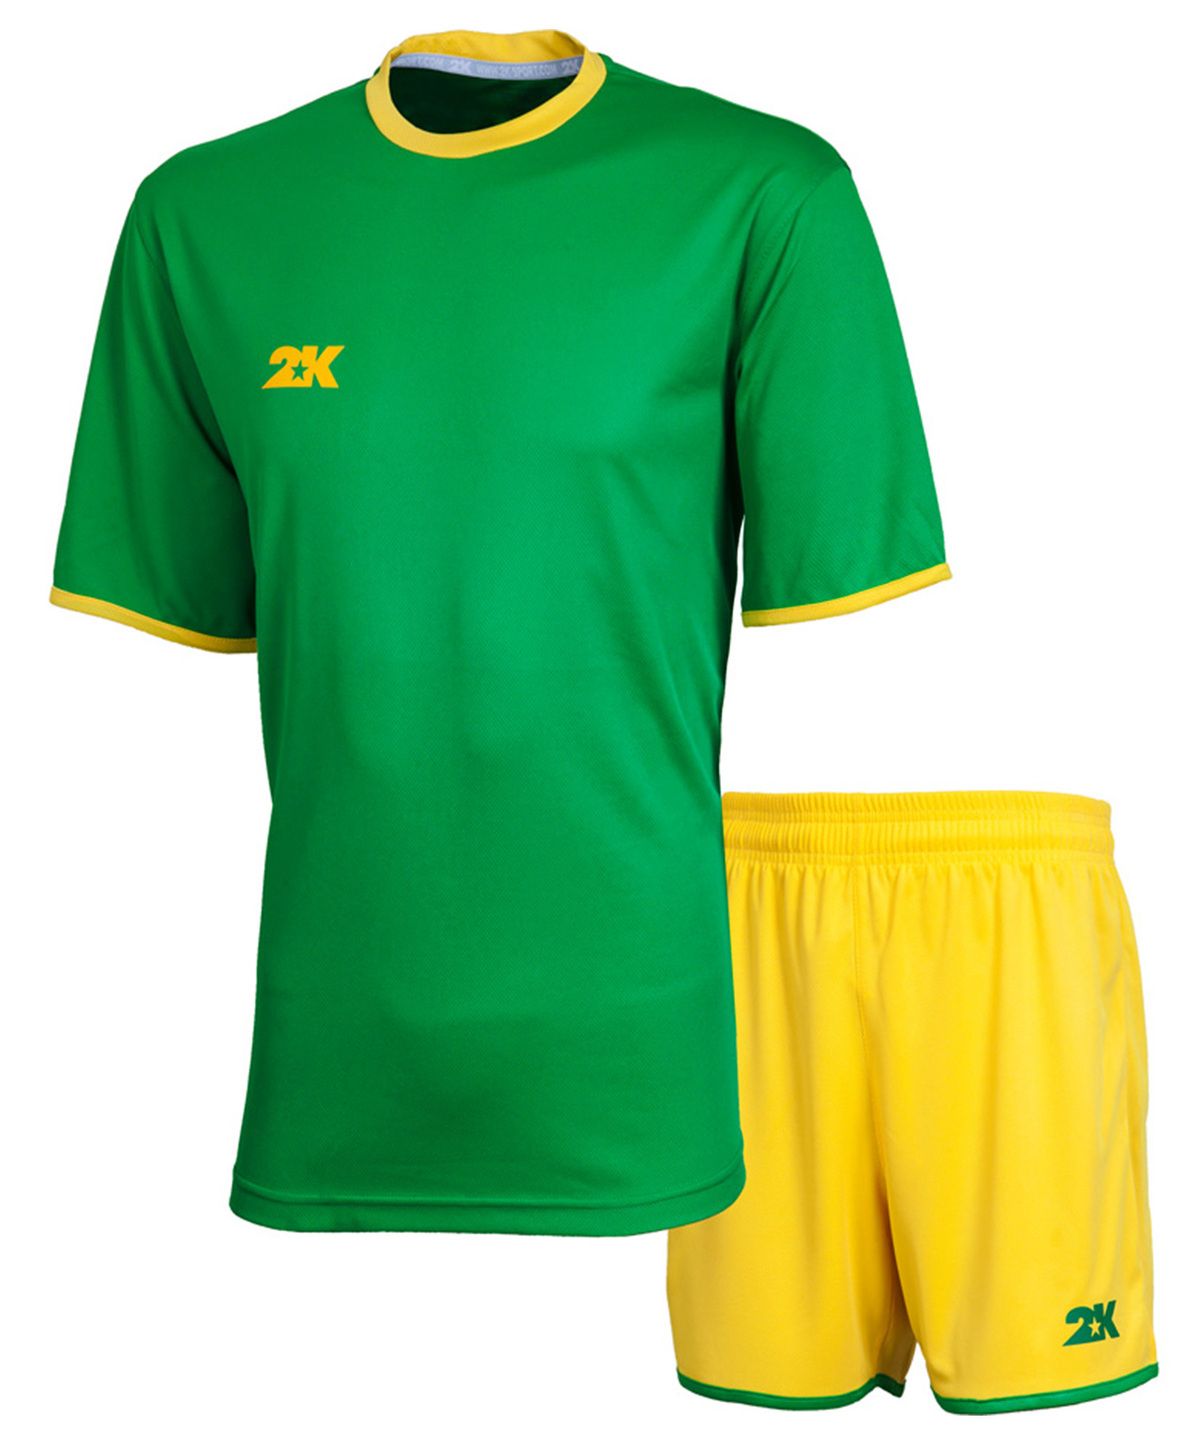 Мужская футбольная форма. 2k Sport futuro ветровка. Зеленая футбольная форма. Форма футболистов. Желтая футбольная форма.